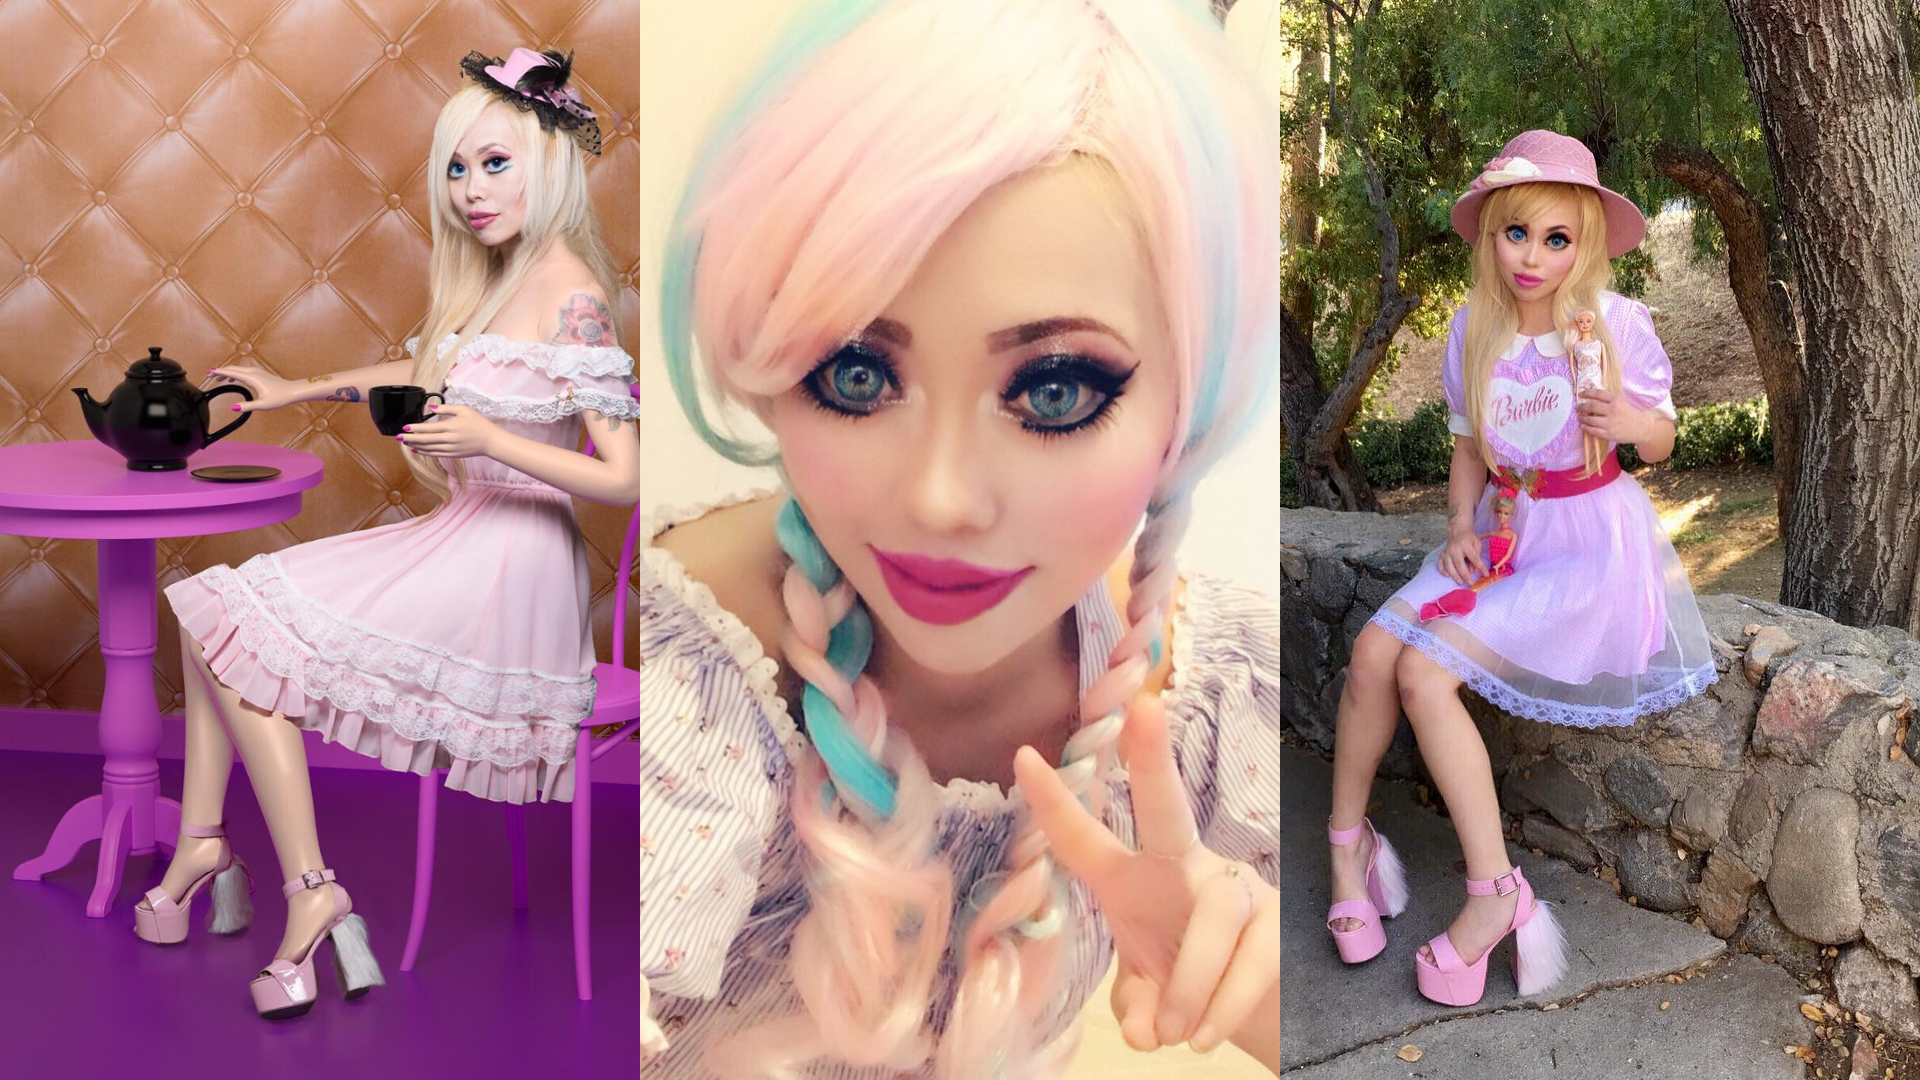 Adepte du bistouri, une jeune femme dépense 60.000$ pour ressembler à Barbie